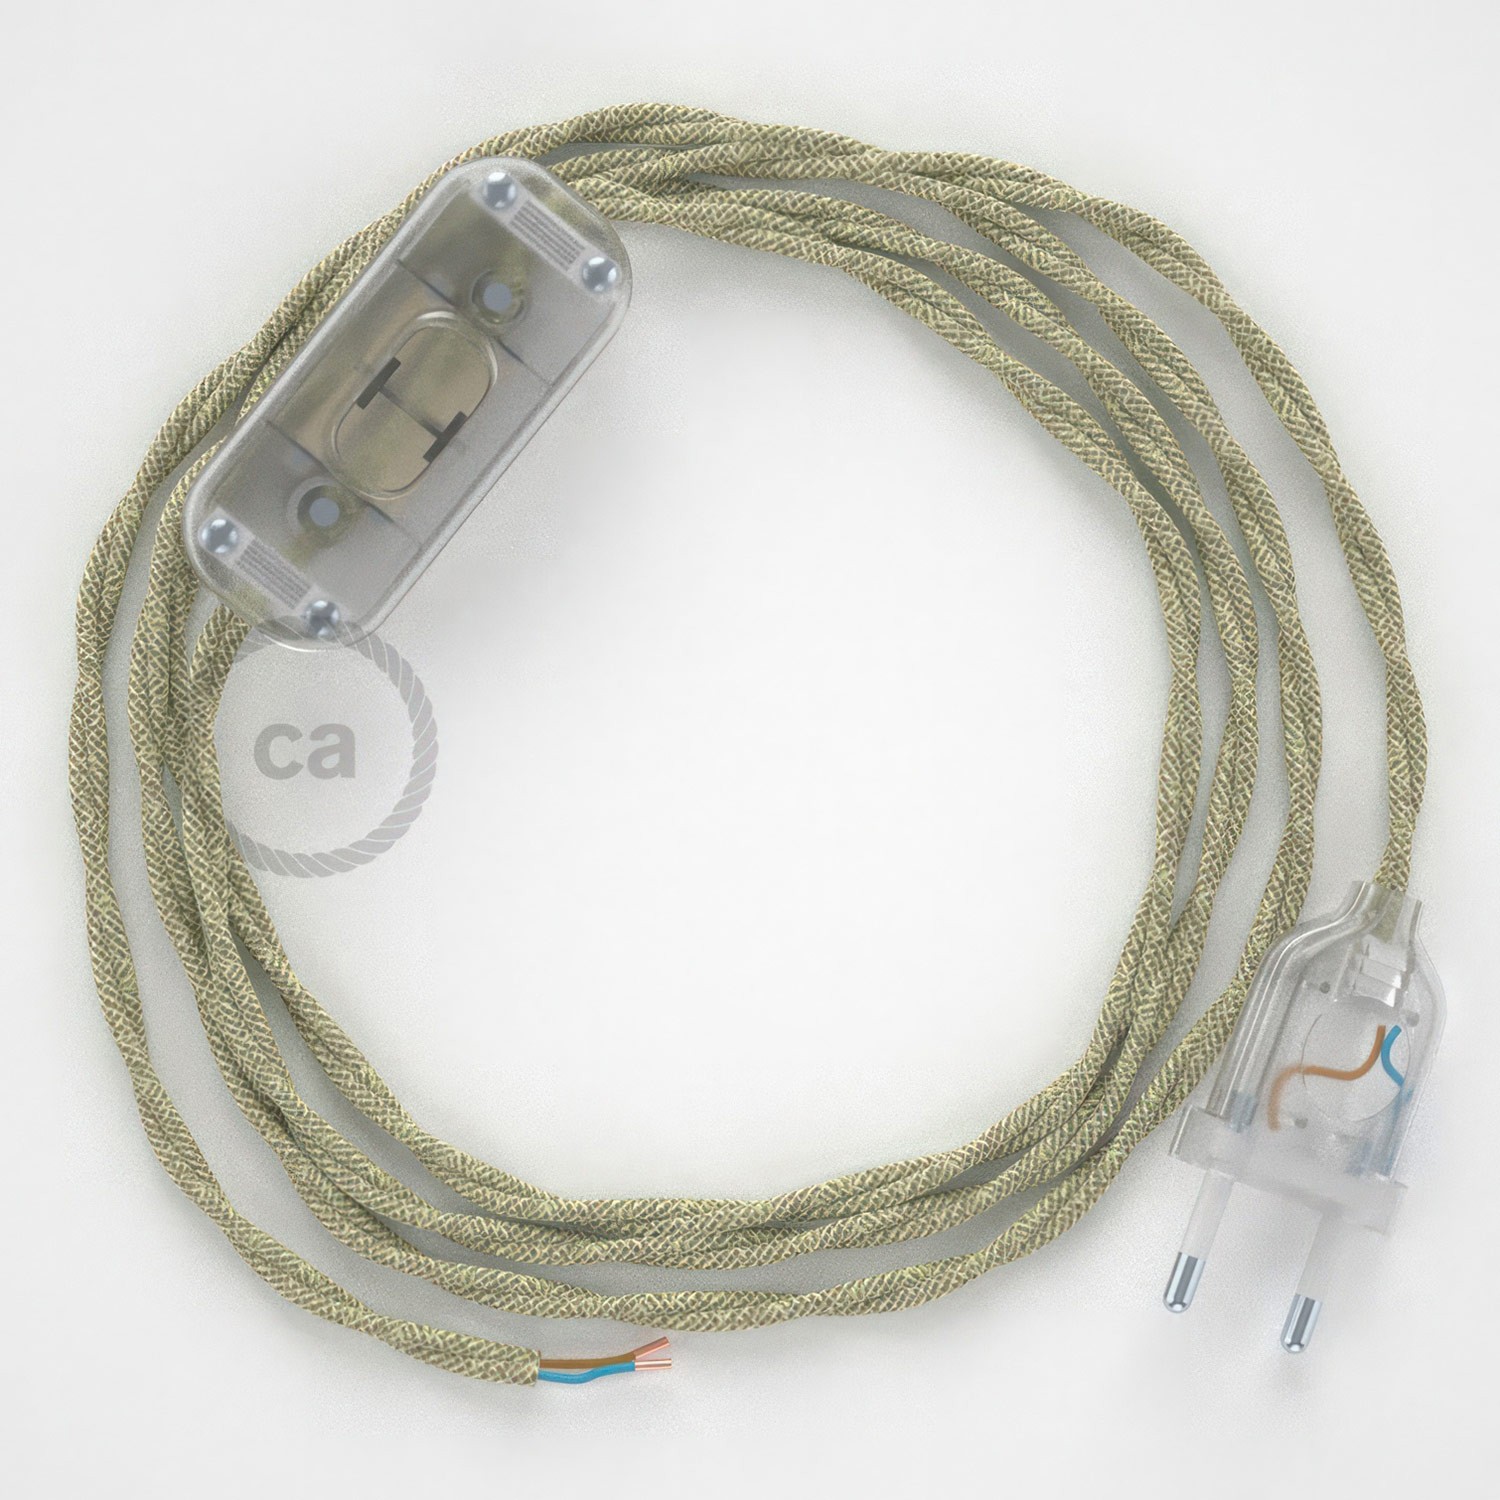 Cableado para lámpara, cable TN01 Lino Natural Neutro 1,8m. Elige tu el color de la clavija y del interruptor!